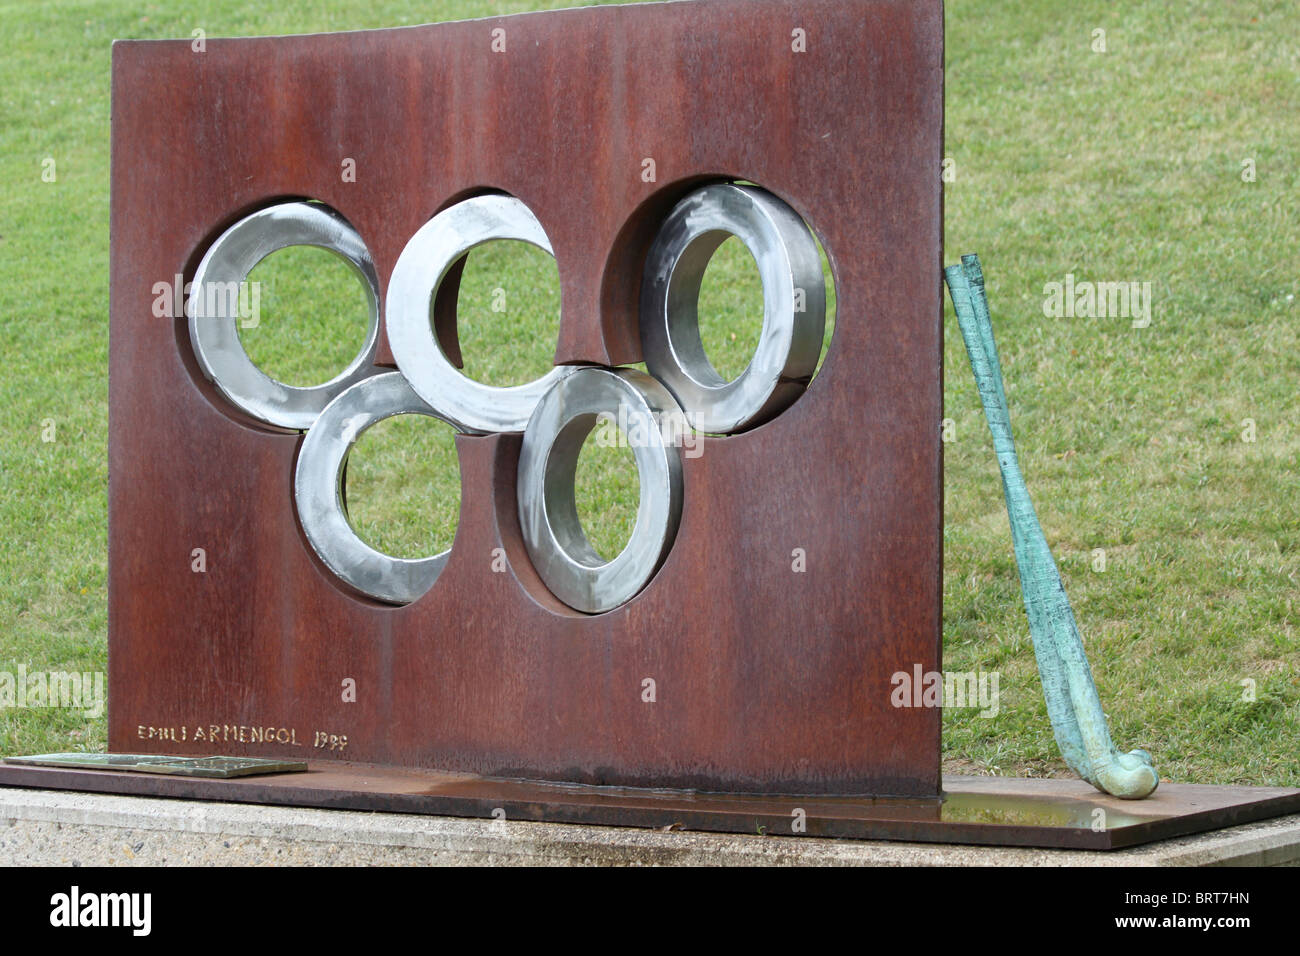 Olympic Museum And Switzerland Stockfotos und -bilder Kaufen - Alamy